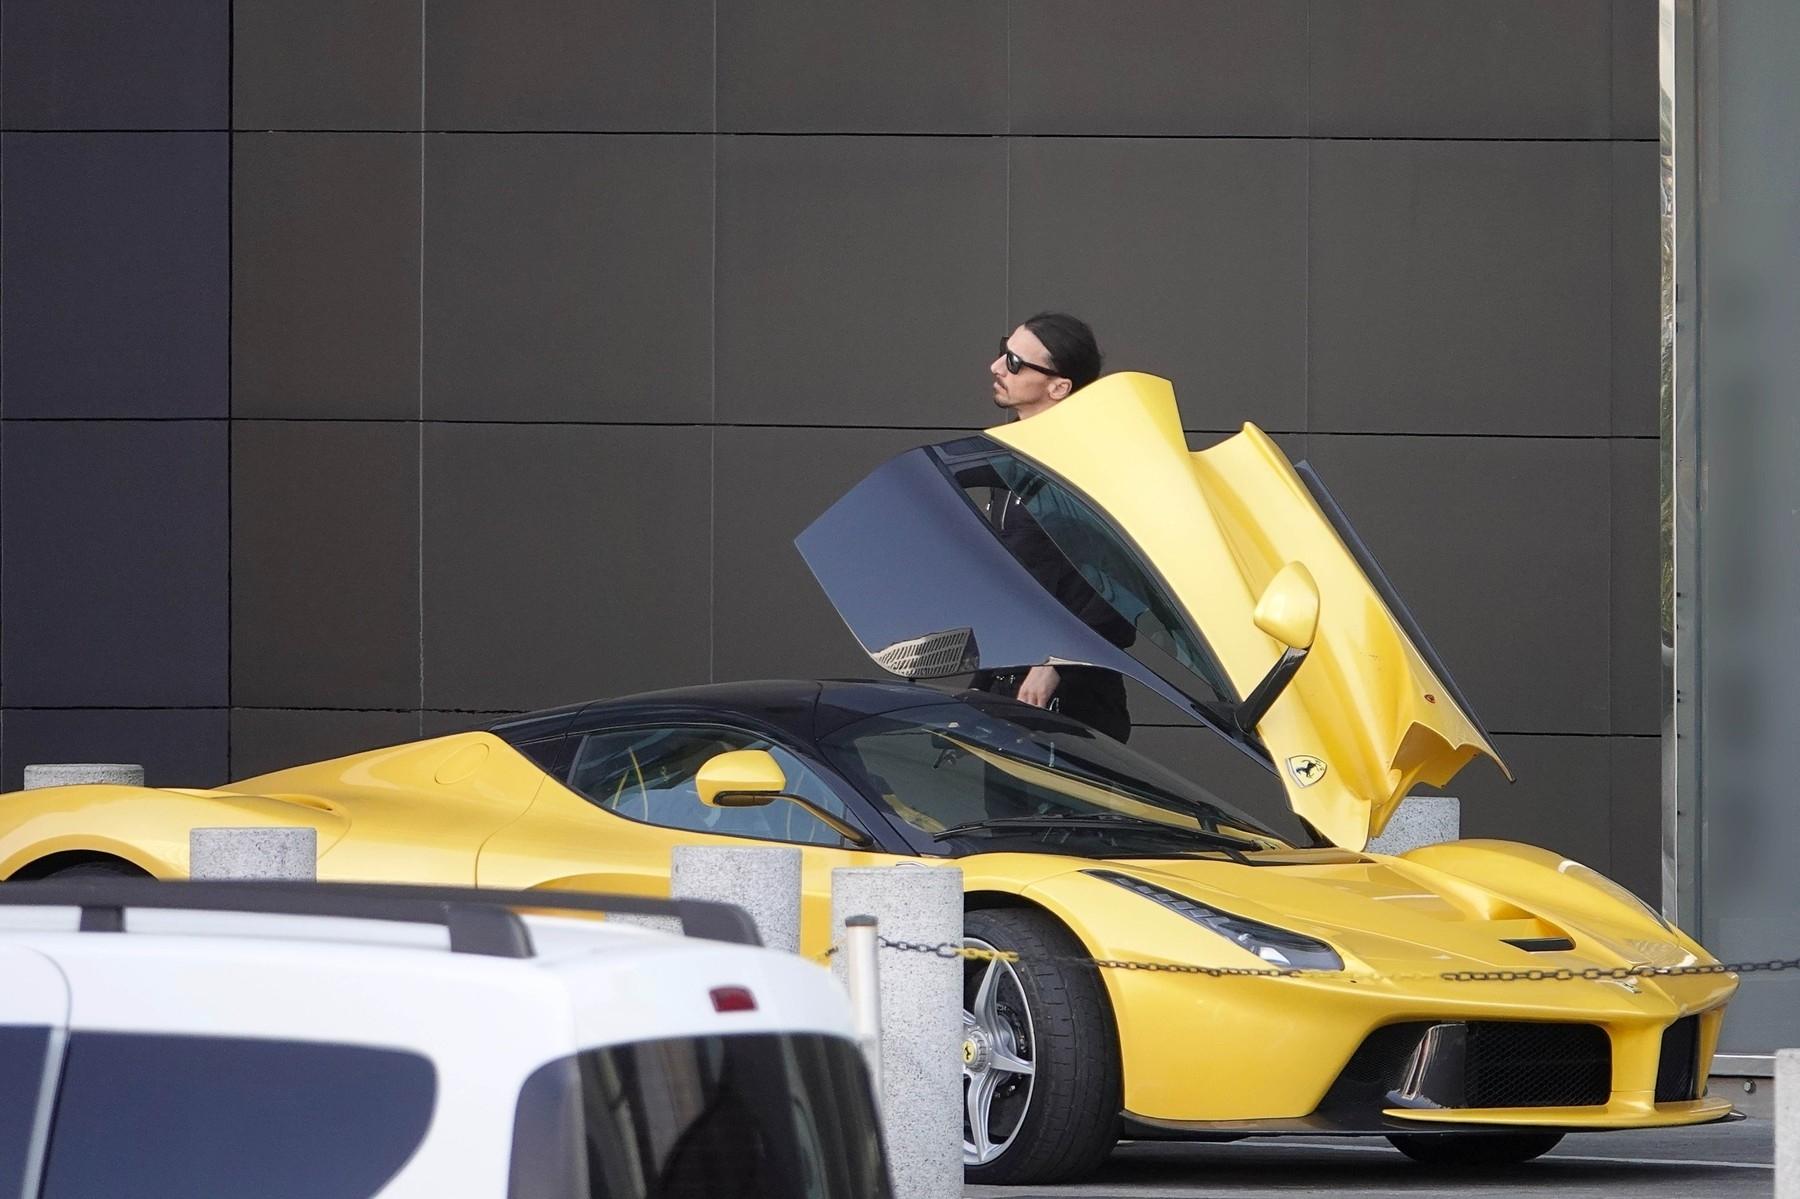 Soi BST xe 12 triệu USD Ibrahimovic: Nhìn đâu cũng thấy Ferrari, đếm sương sương đã có vài siêu phẩm - Ảnh 4.